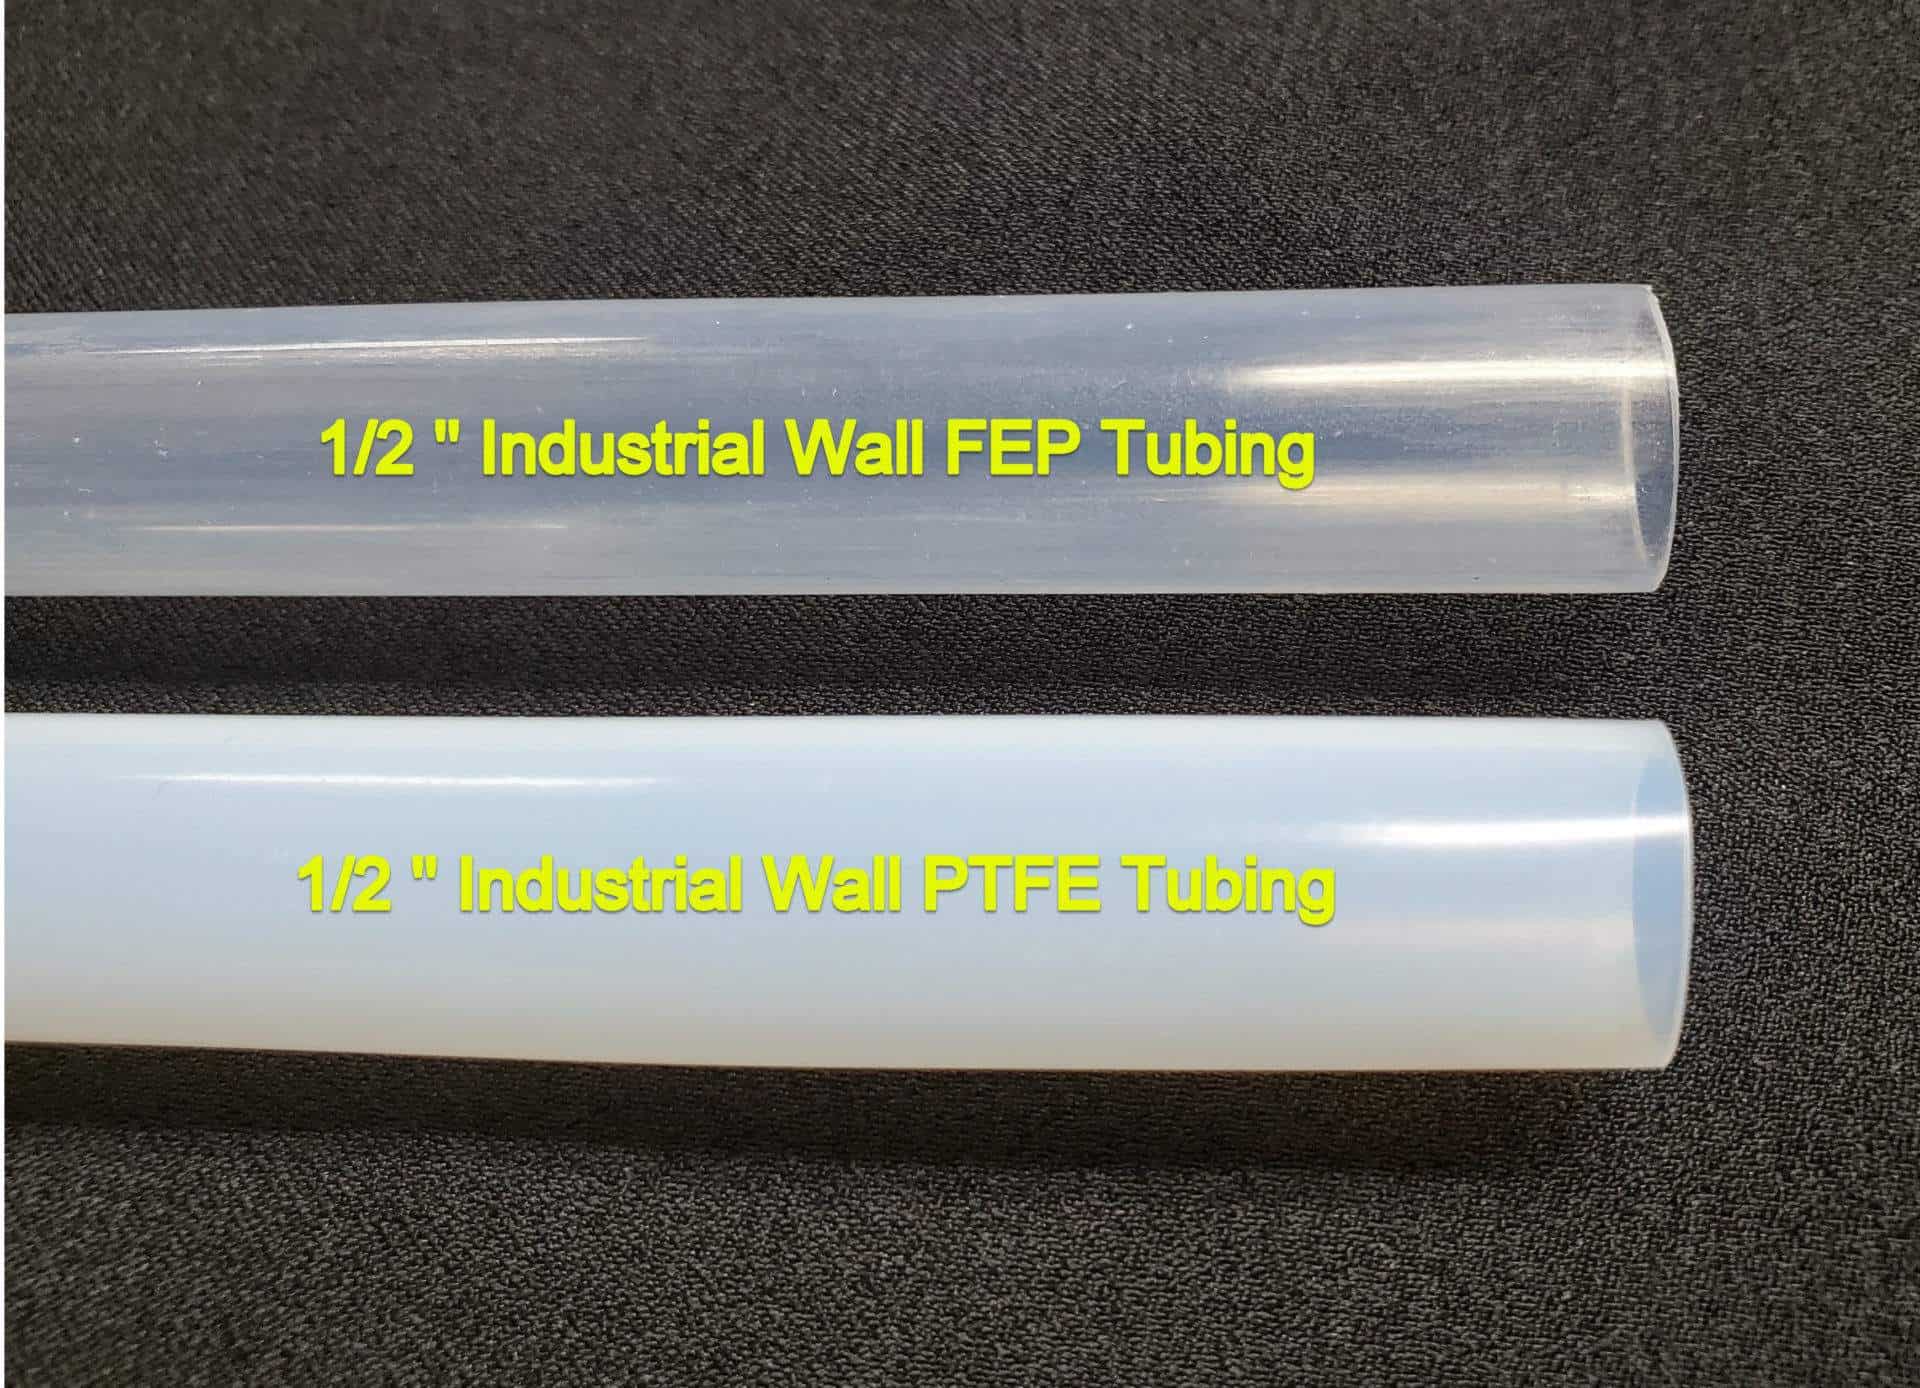 PTFE Tubing